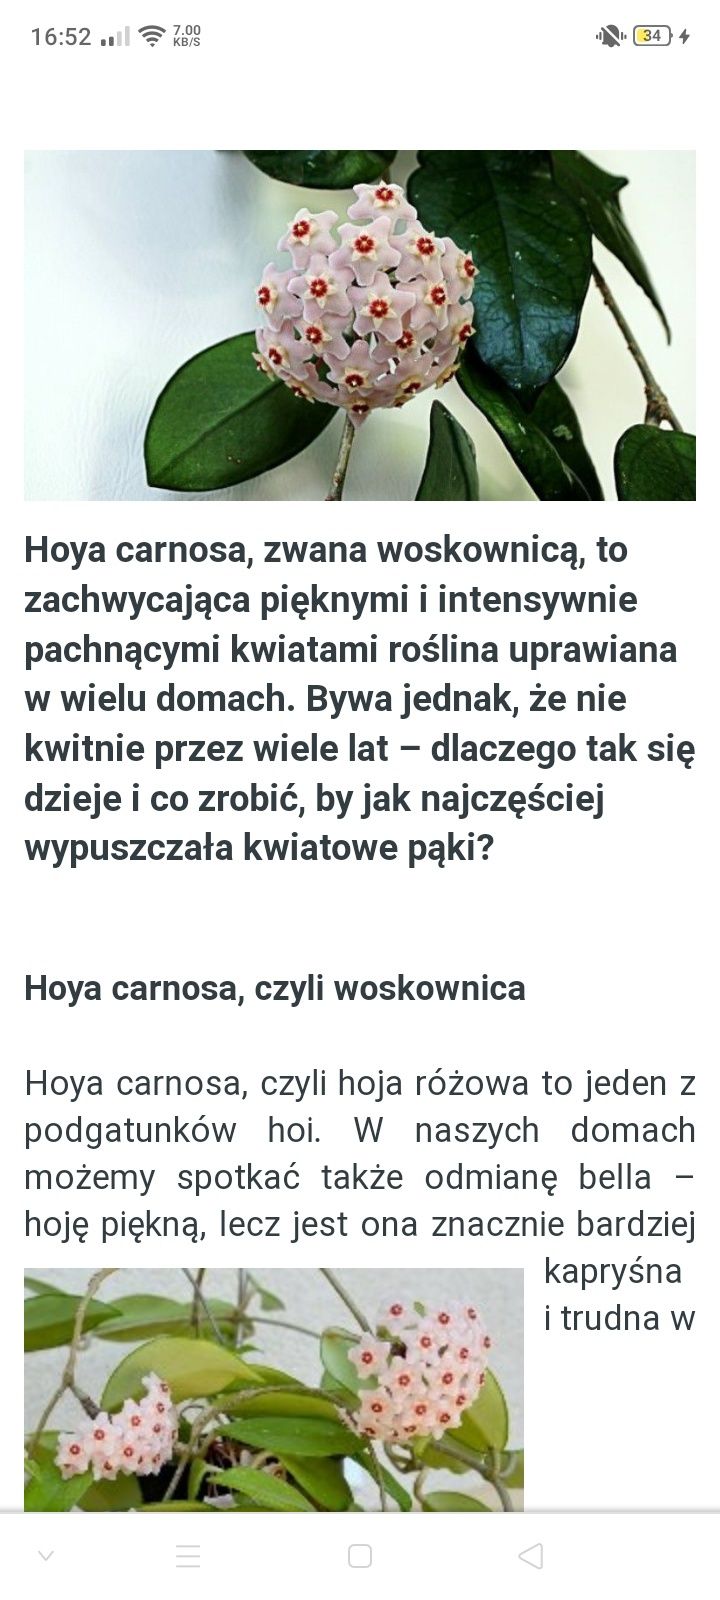 Hoya carnosa kwiat doniczkowy, amarylis, sensewieria, aloes